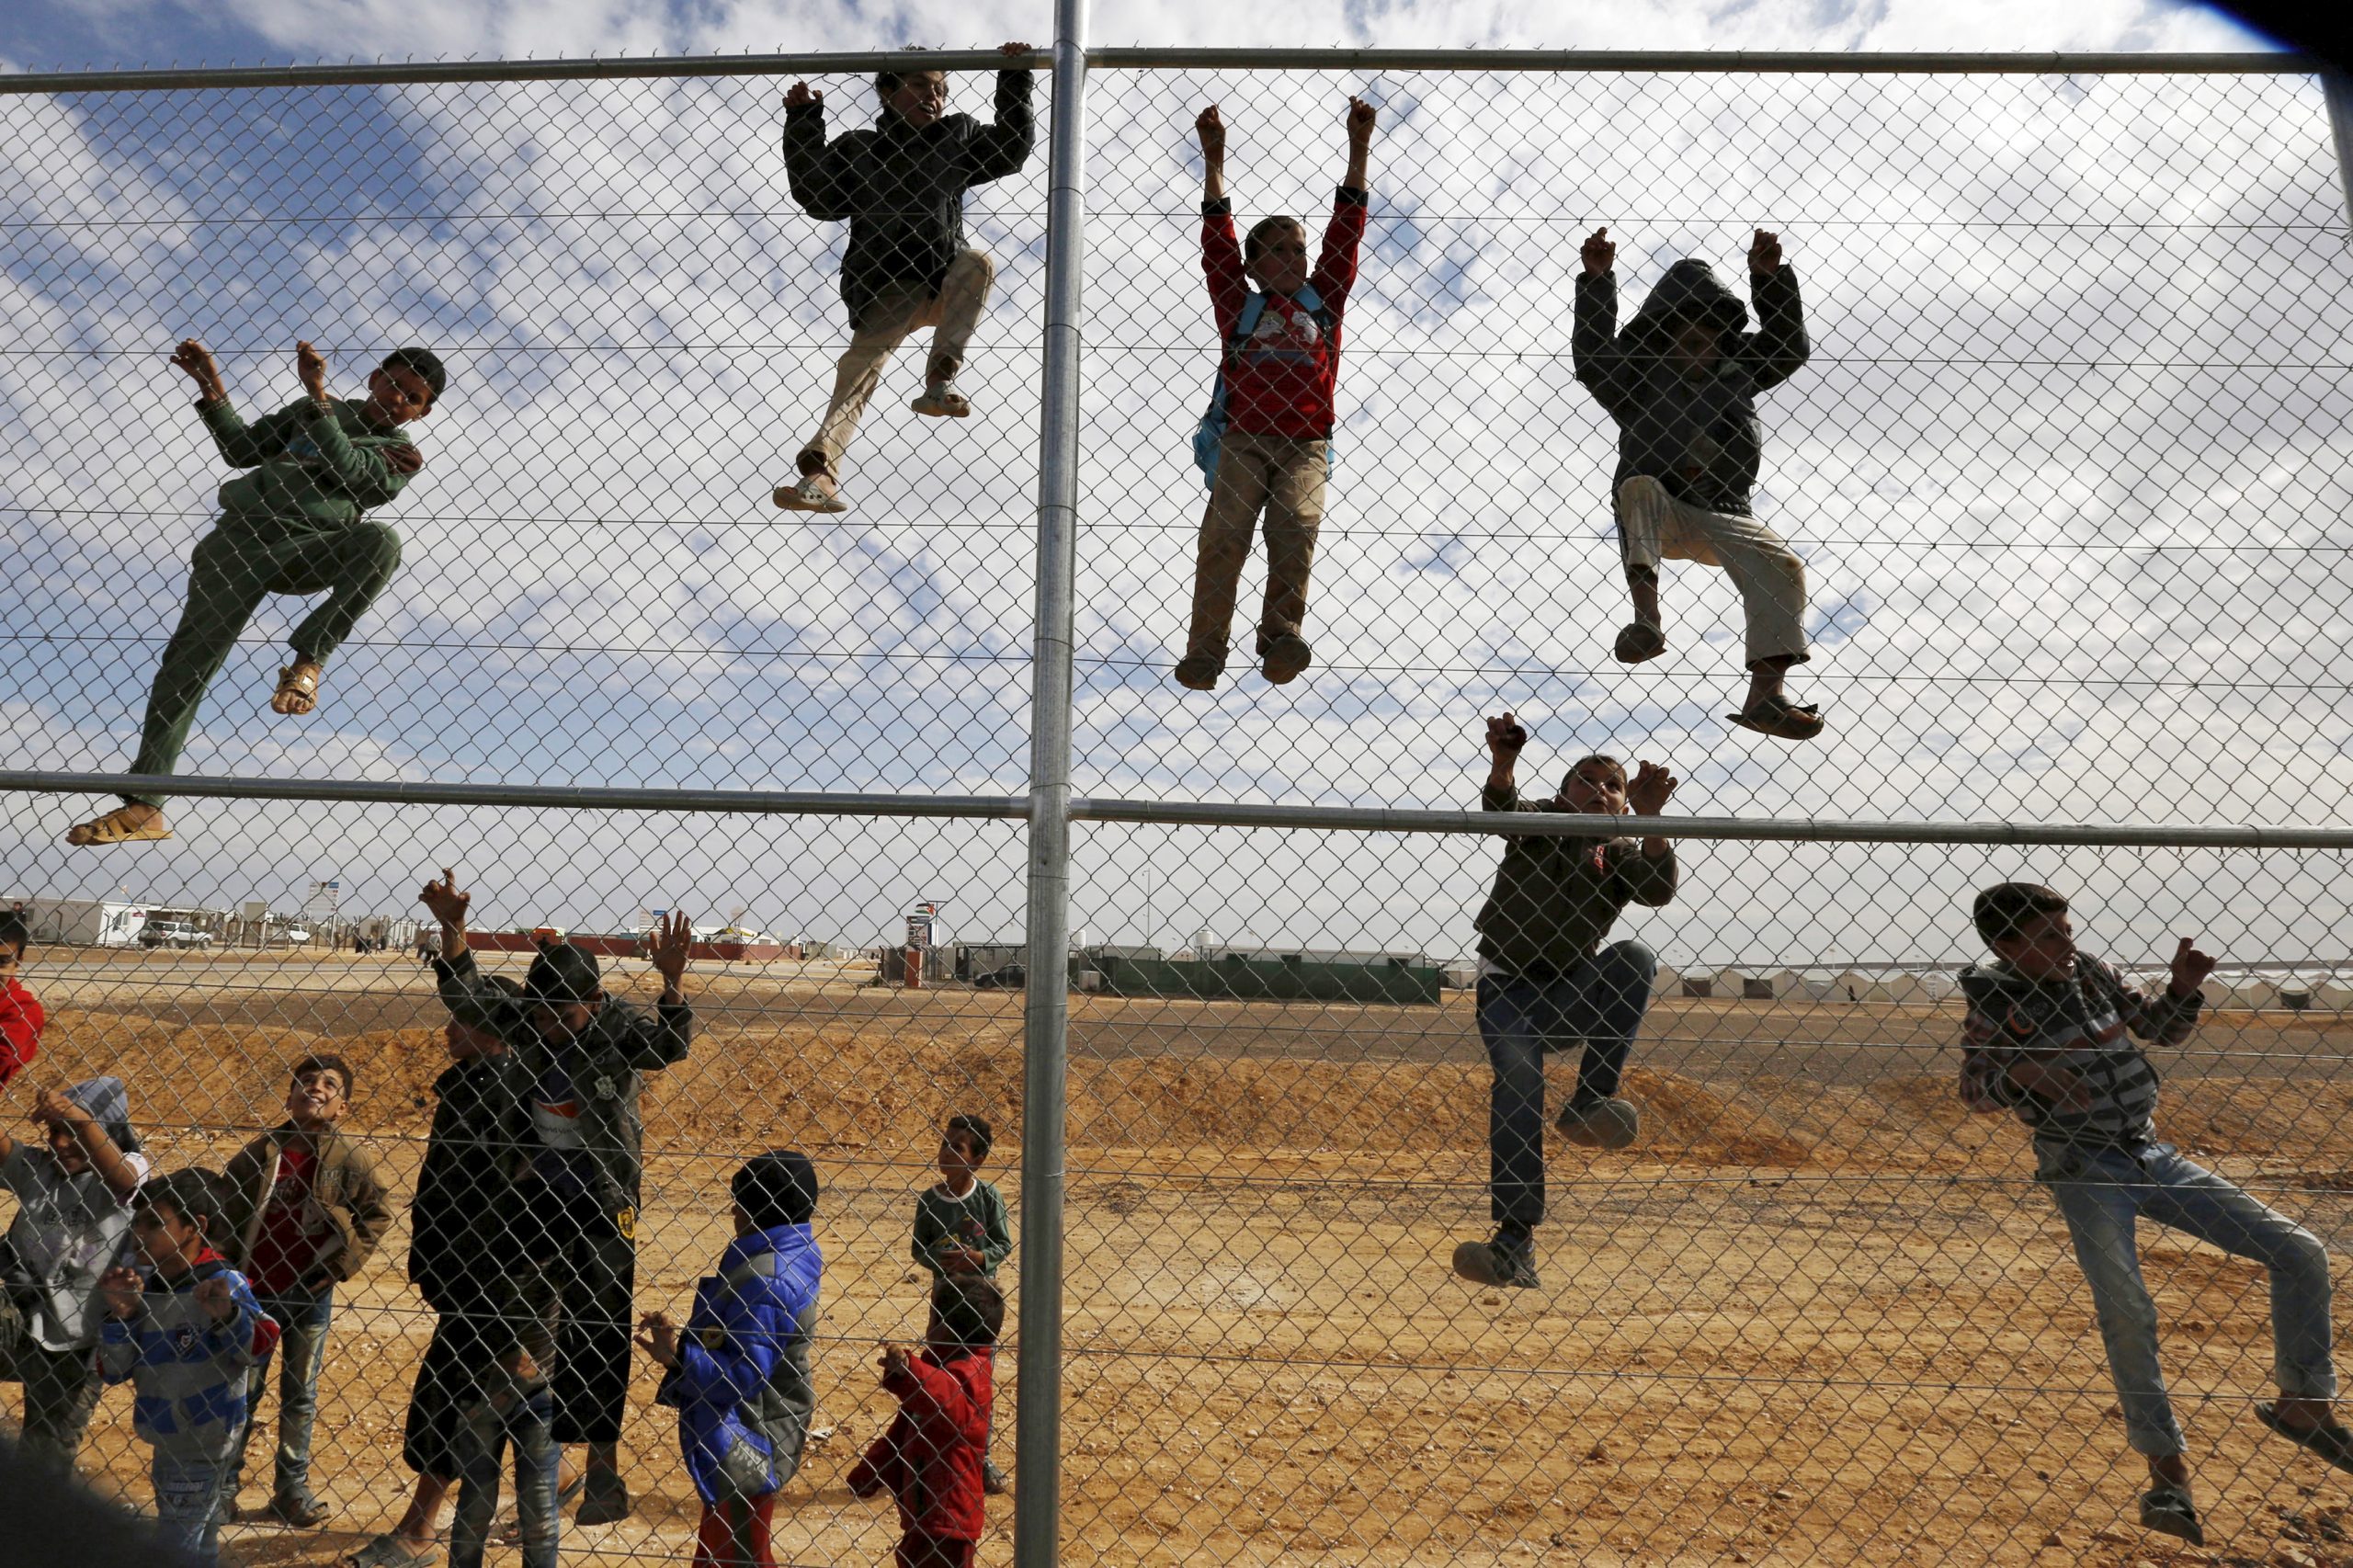 أطفال سوريون لاجئون يتسلقون على سياج من أجل مشاهدة ورشة تدريبية لكرة القدم بمخيم الأزرق للاجئين، الأردن، 17 نوفمبر 2015. رويترز، محمد حامد.